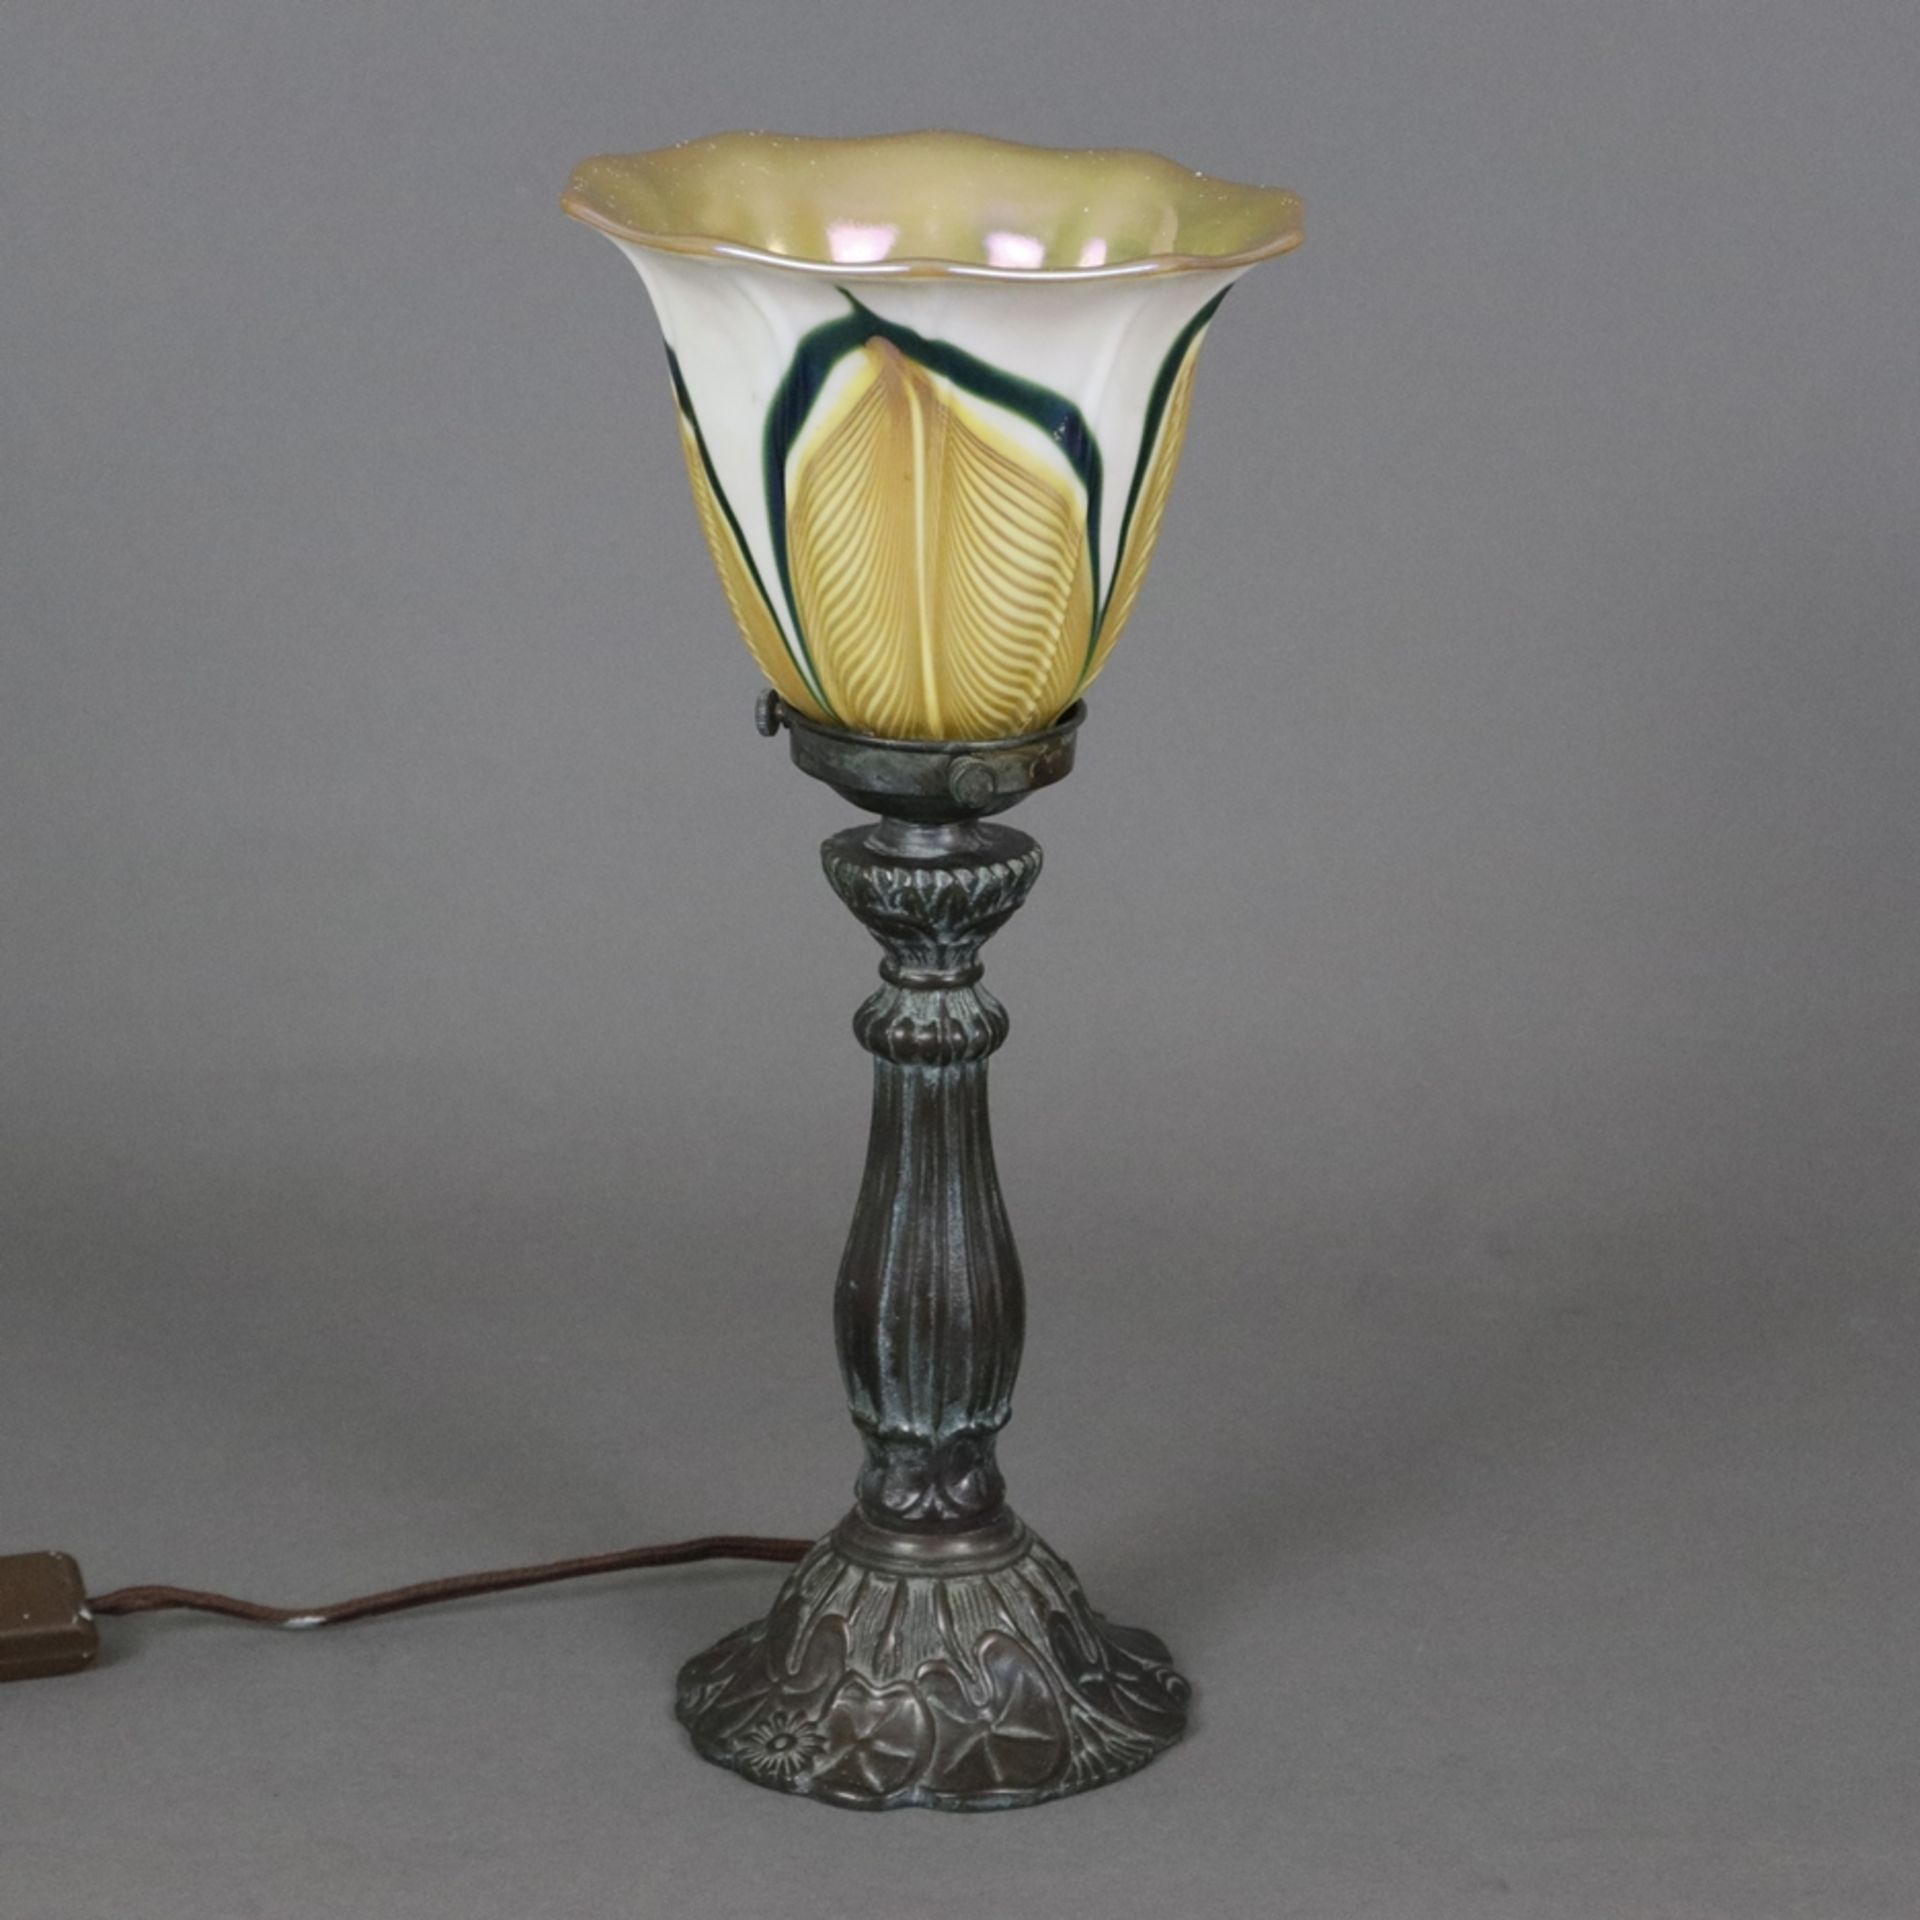 Jugendstil Tischlampe - um 1900/10, floral reliefierter Metallfuß, bronziert, glockenförmiger Glass